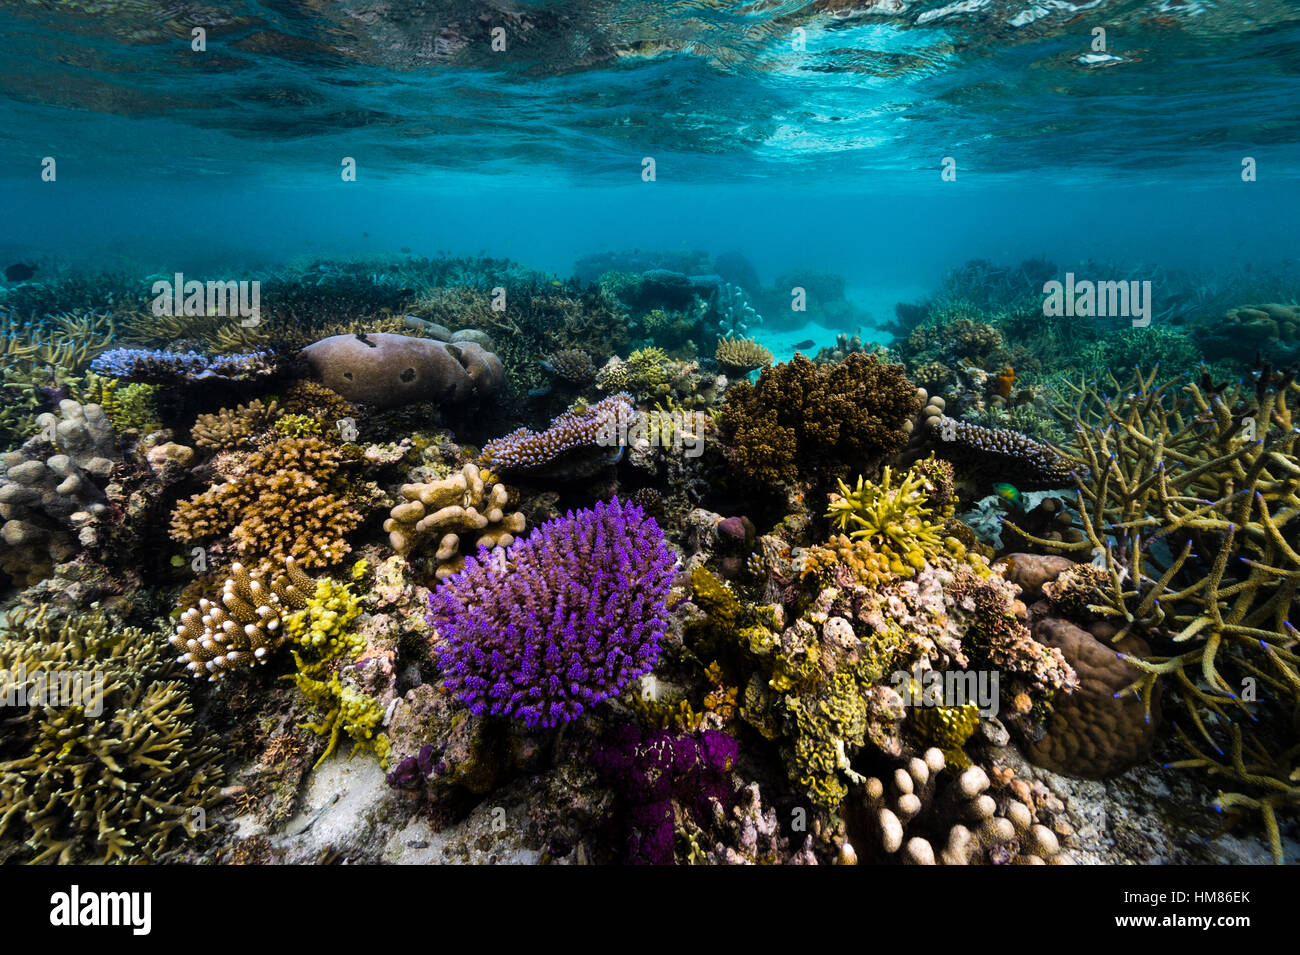 D'un violet vif germination de corail dur à partir d'un récif tropical florissante en eau peu profonde. Banque D'Images